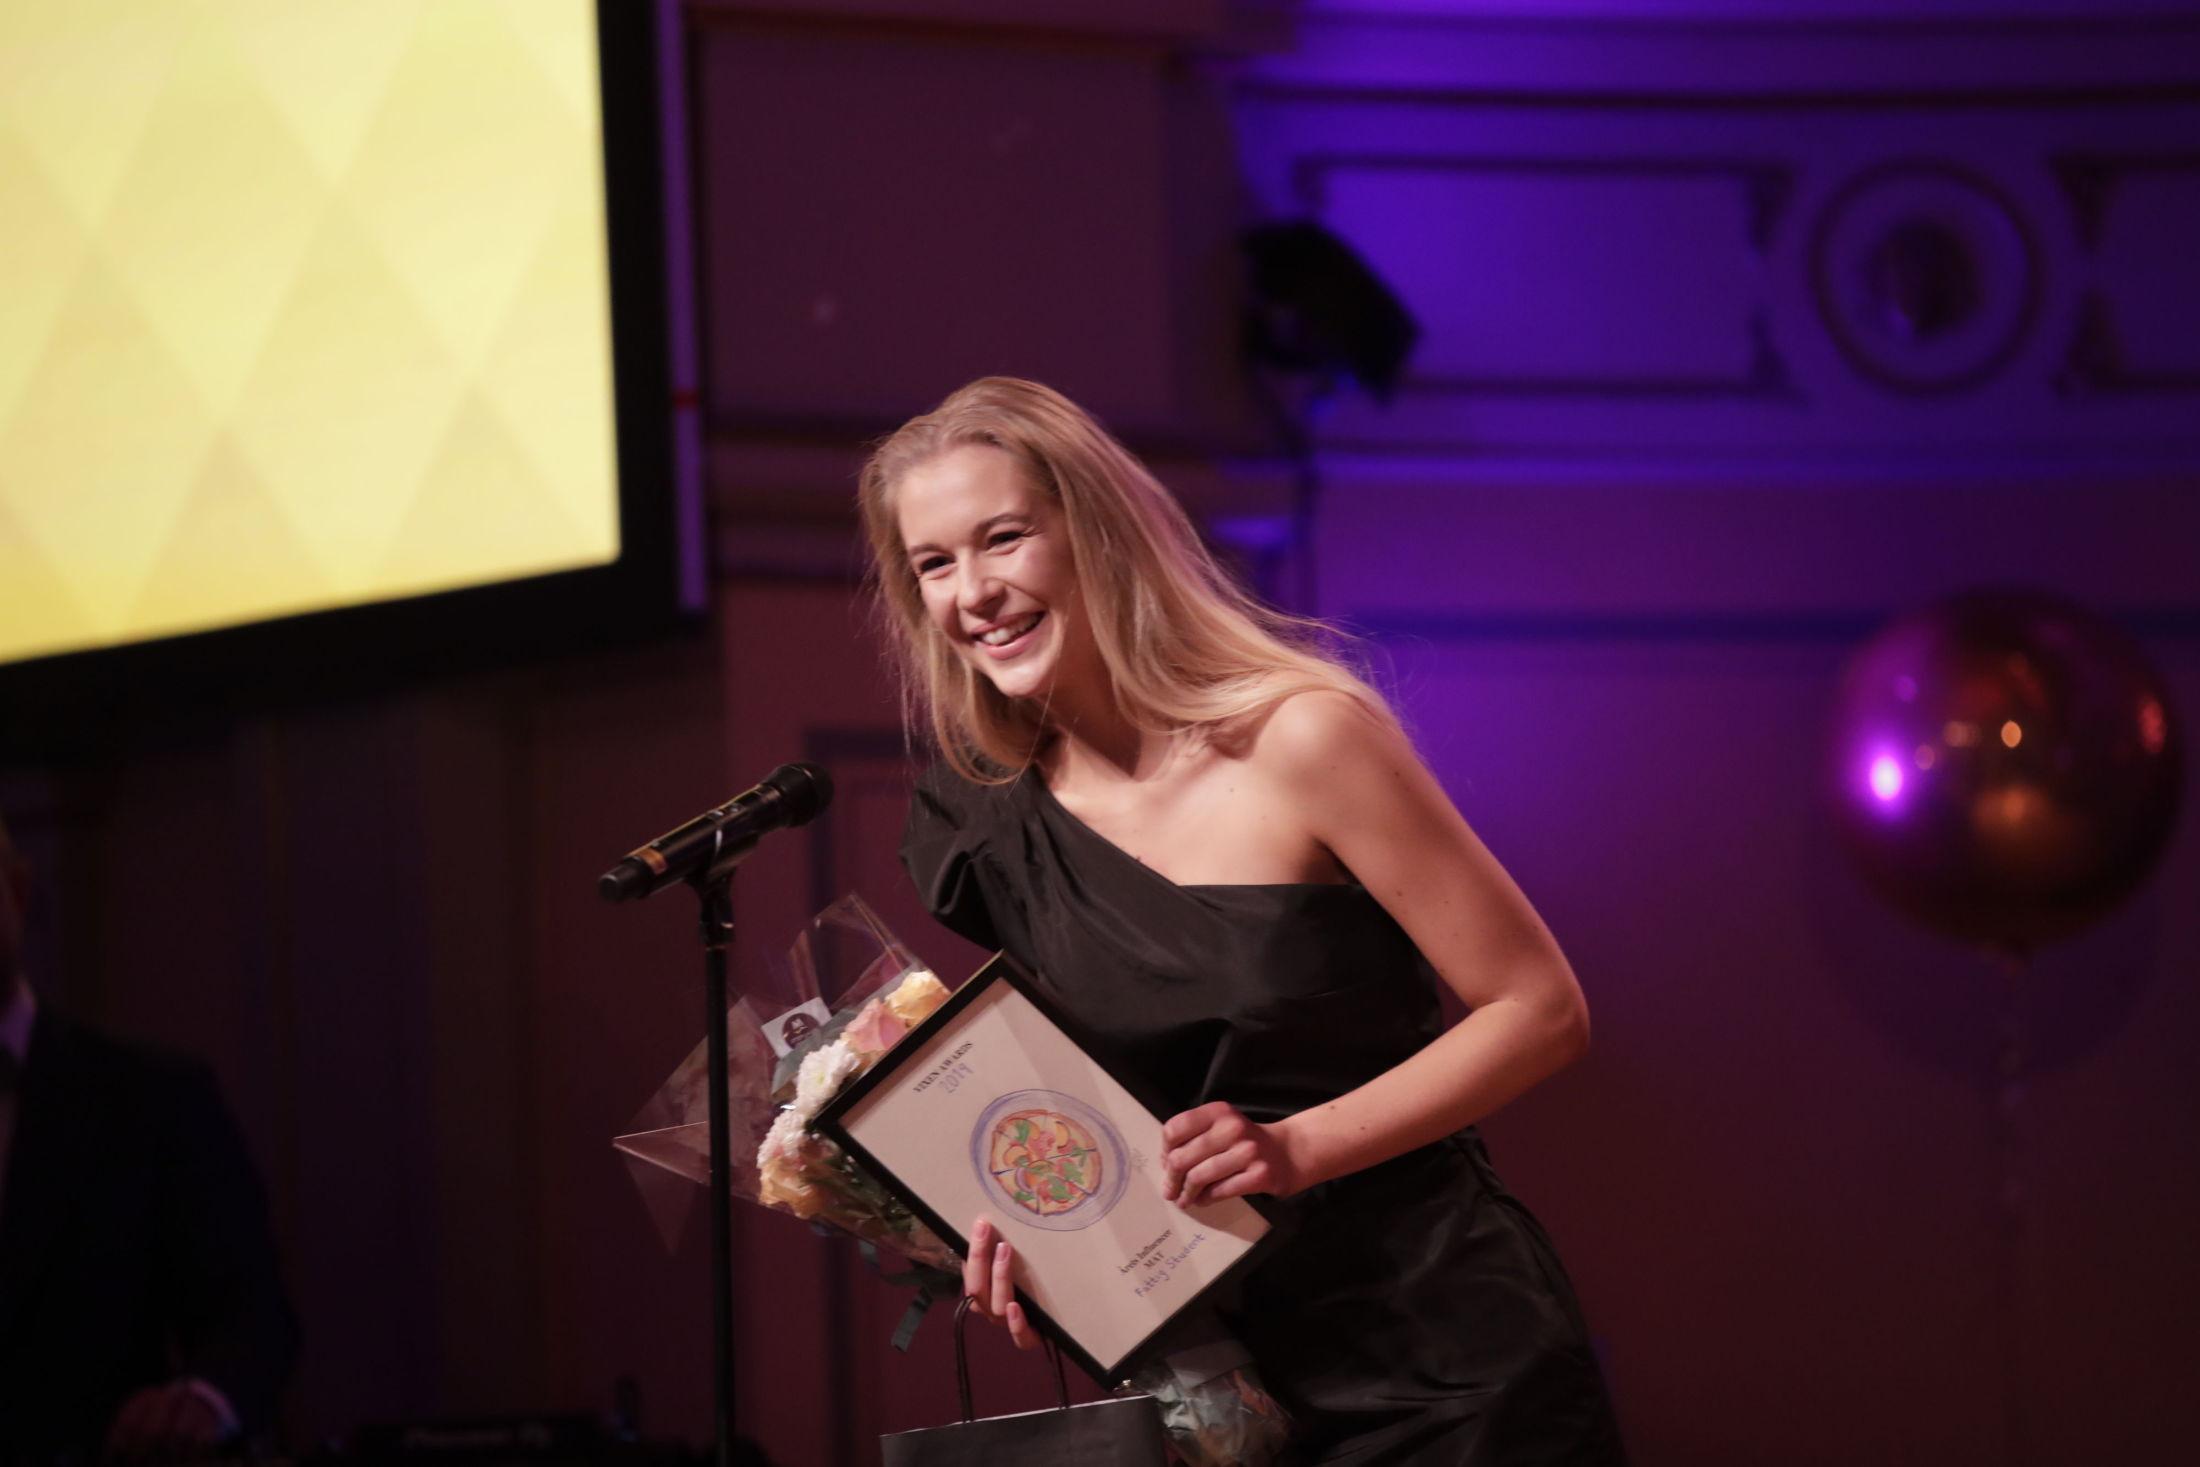 FØRSTE PRIS: Karen Elene Thorsen vant prisen «årets influenser mat». Foto: Vidar Ruud / NTB scanpix